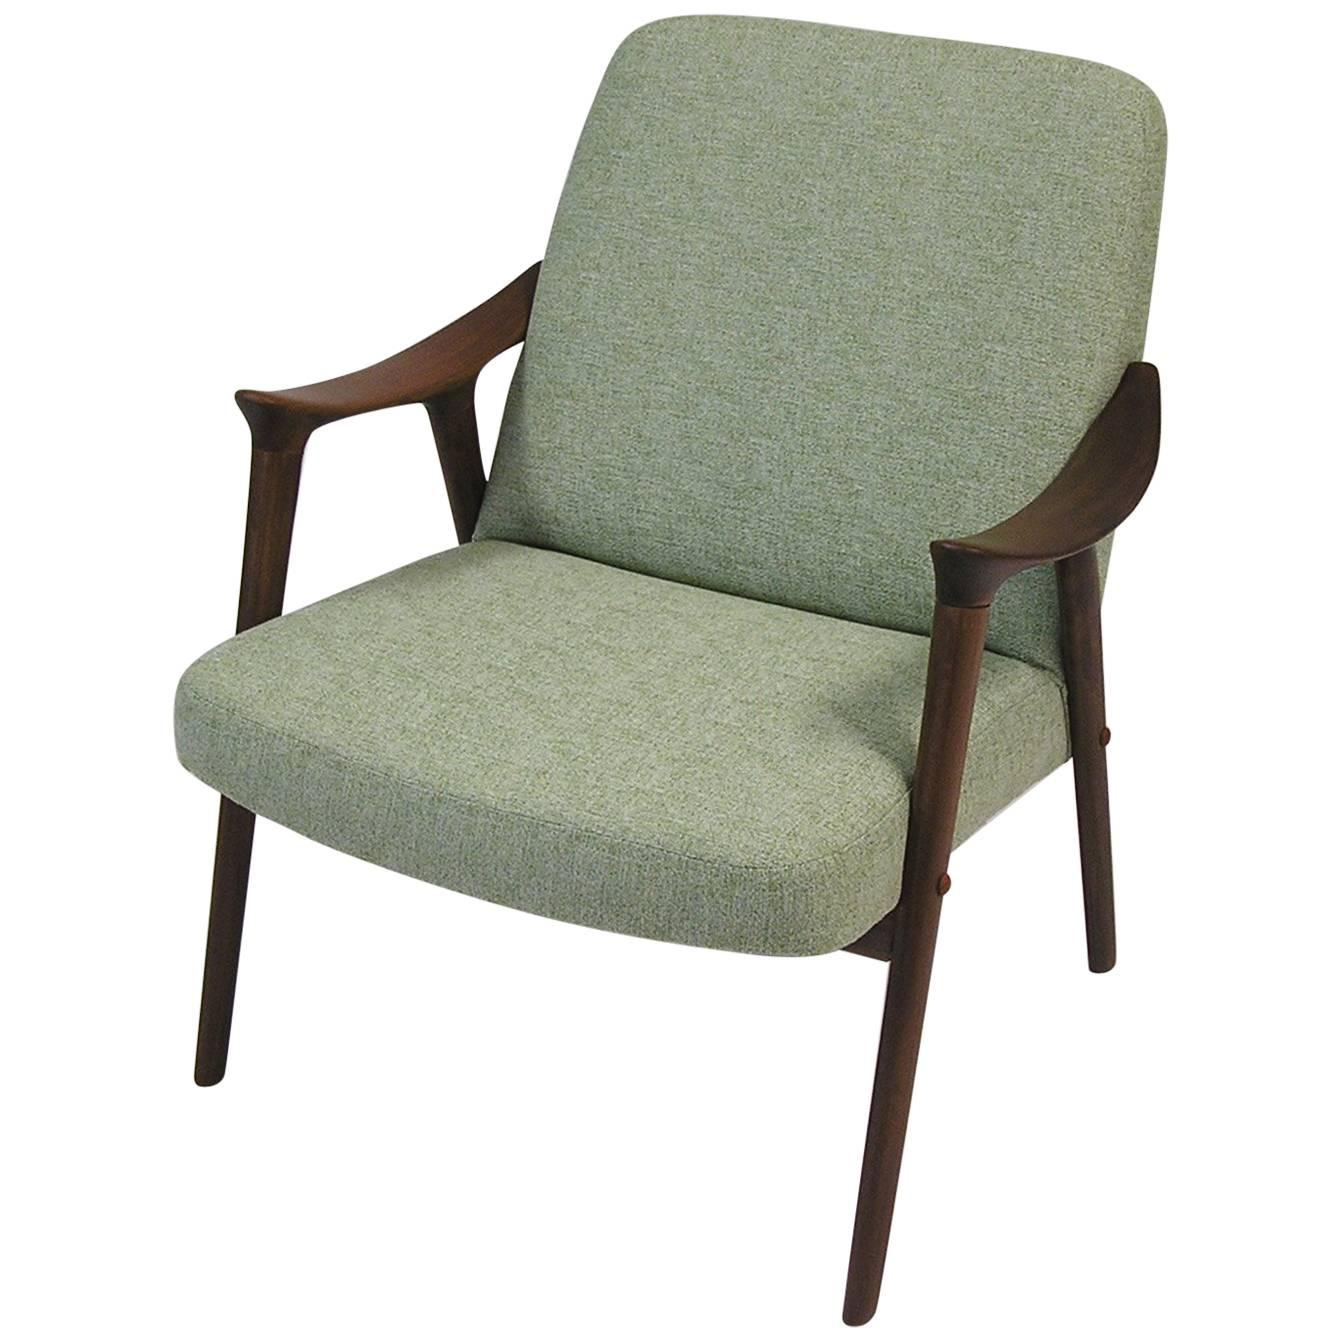 1960s Teak Lounge Chair by Ingmar Relling for Westnofa, Norway